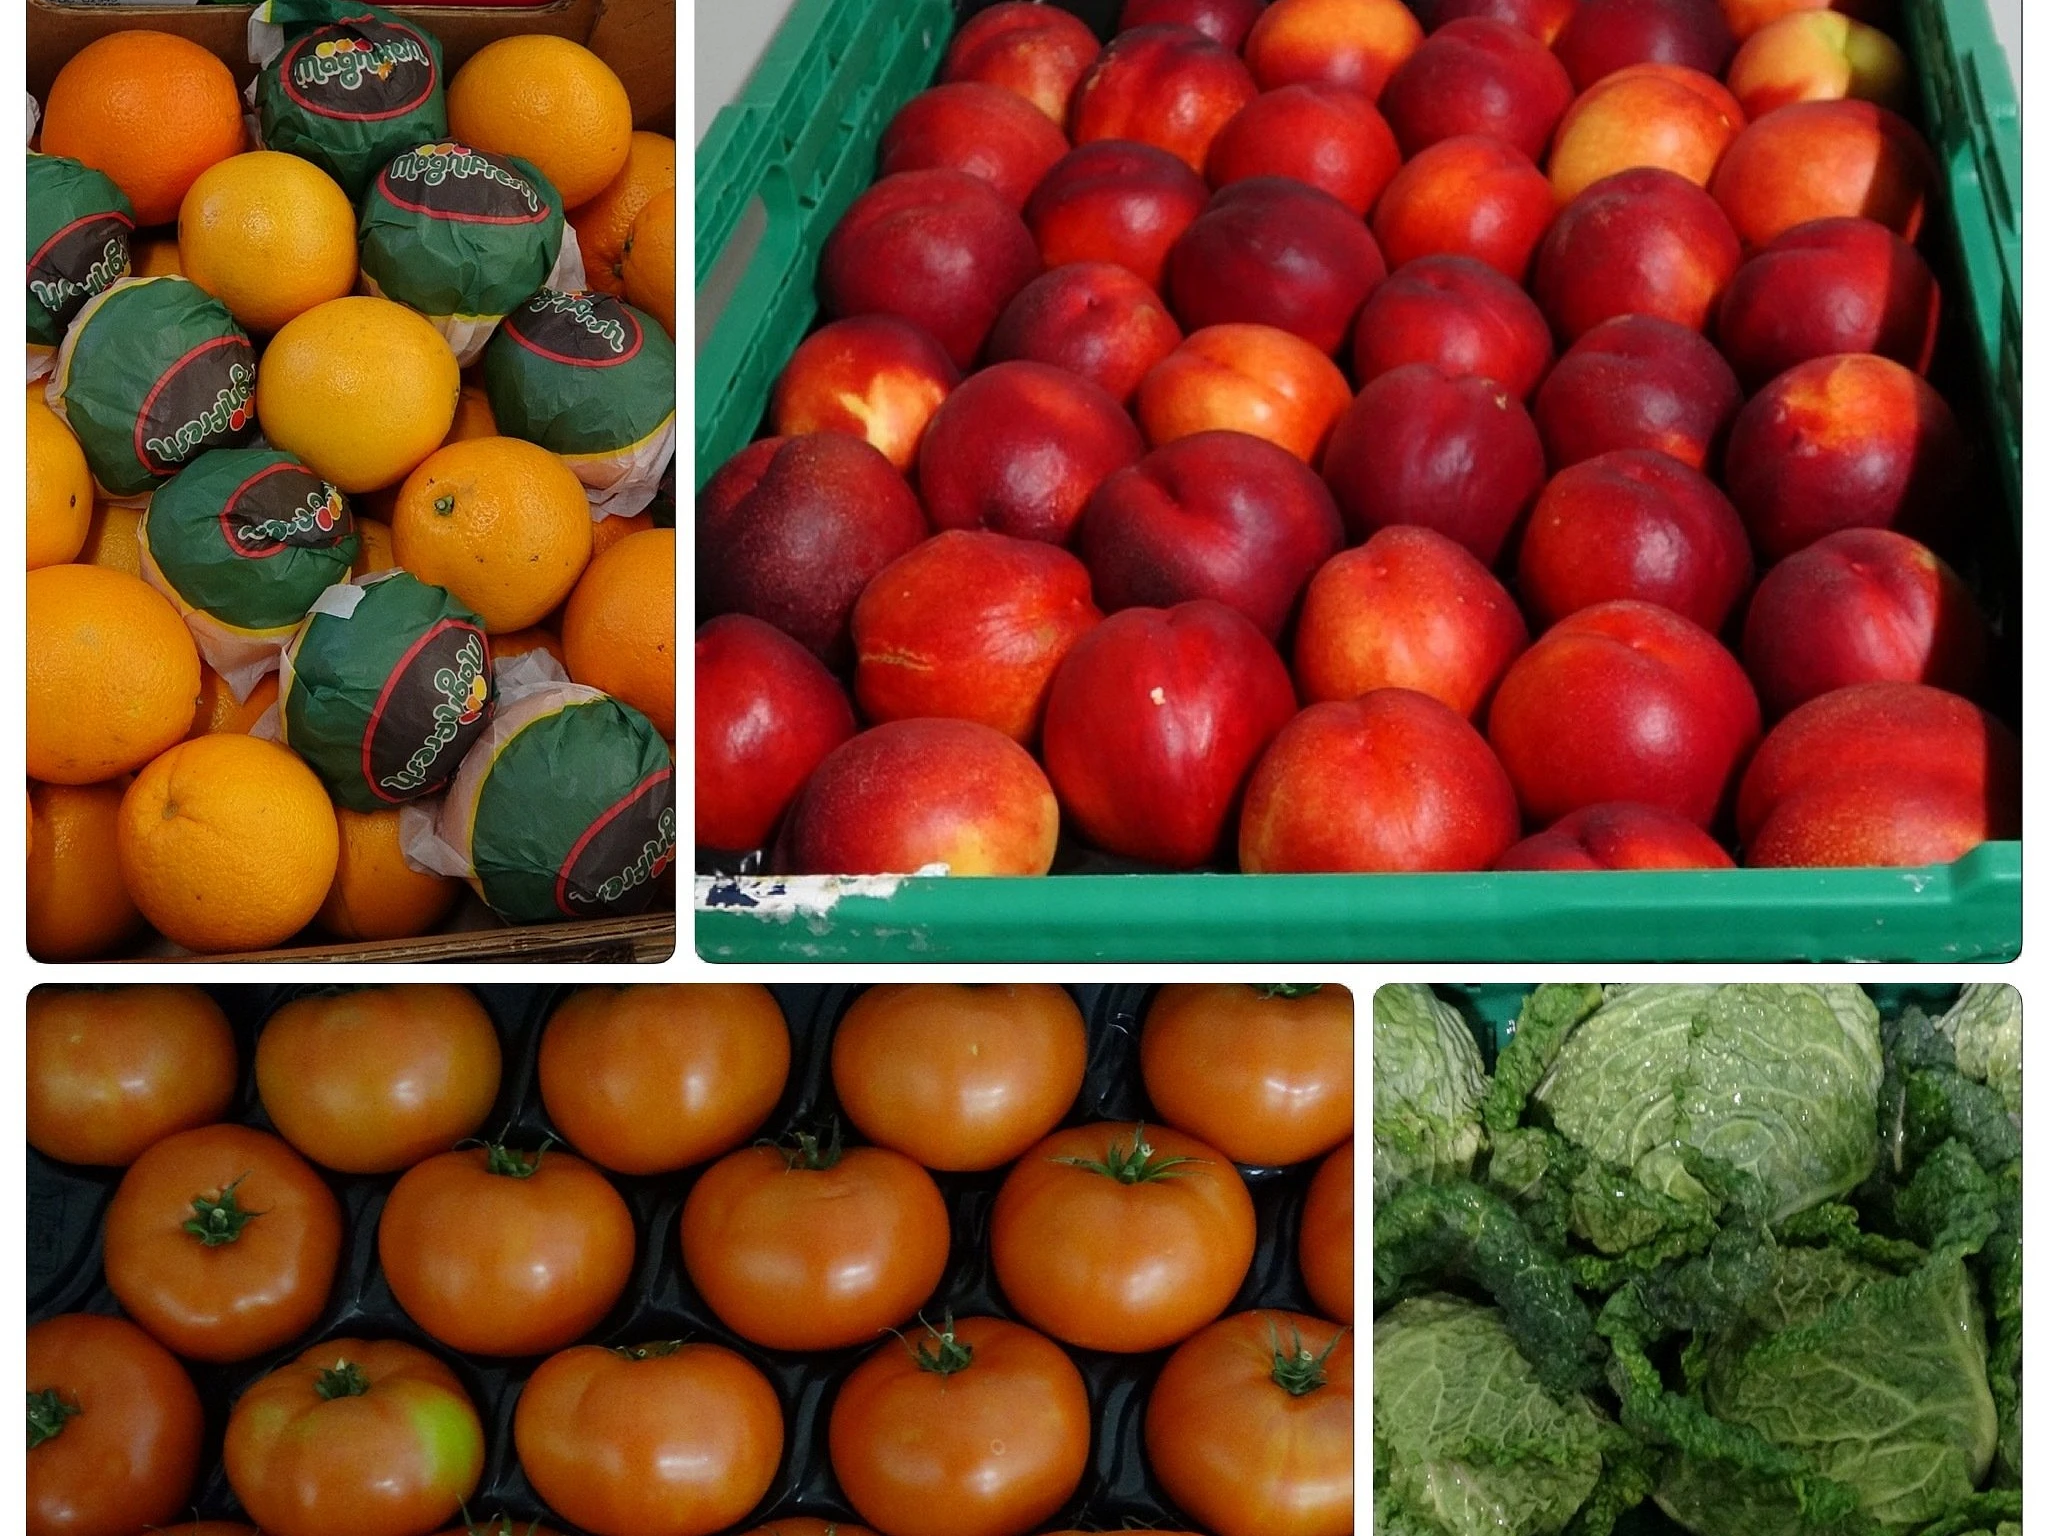 Roos Früchte, Gemüse und Tiefkühlprodukte